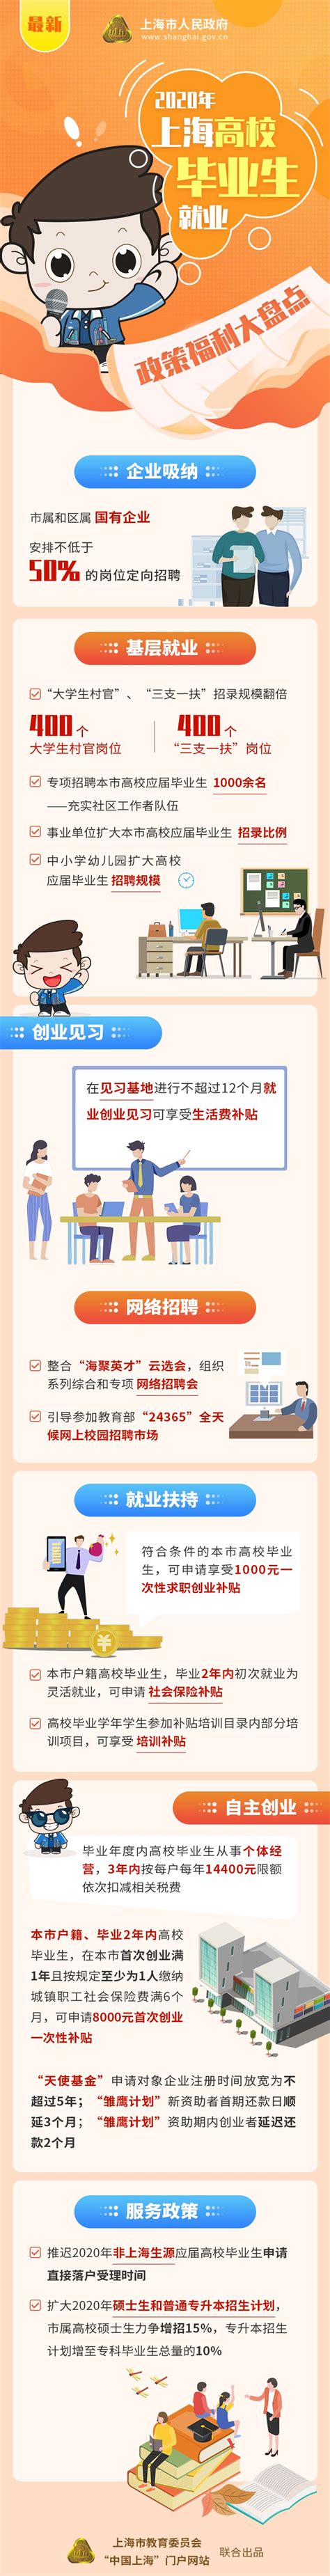 2020年上海三支一扶考试将提供400个岗位，扩招明显_国家公务员 ...